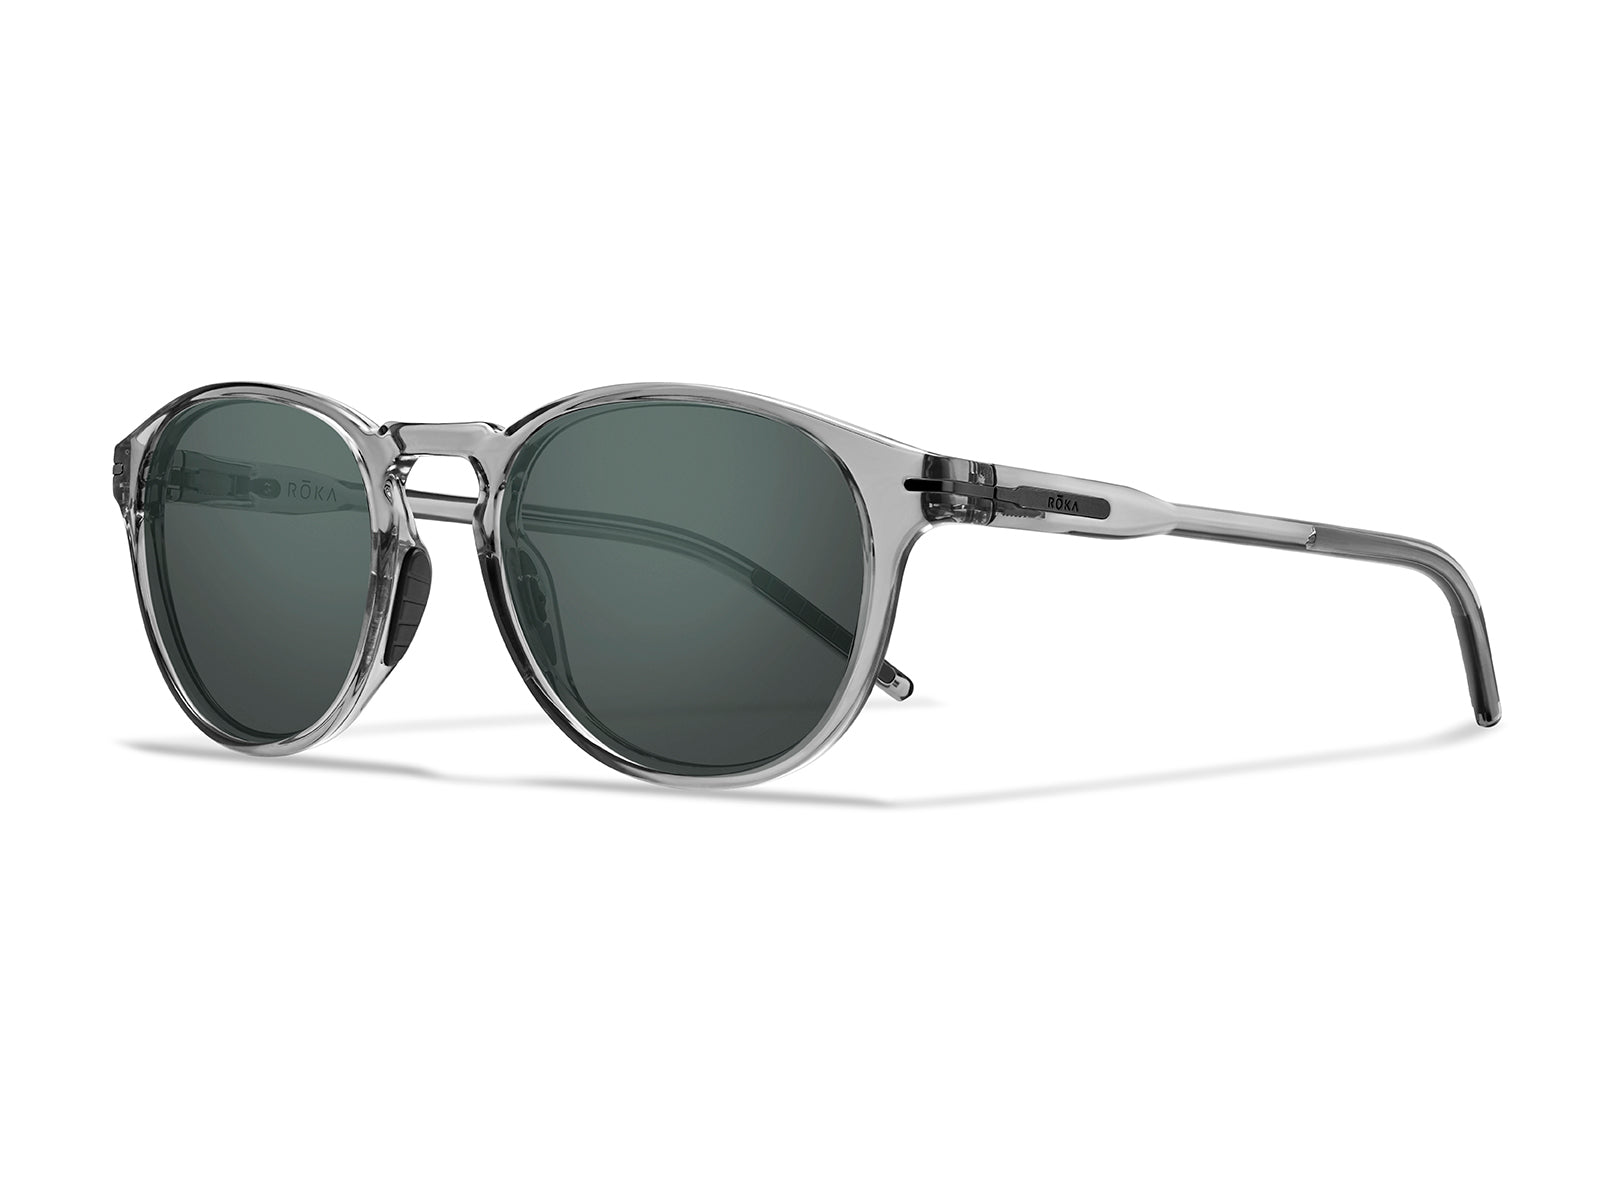 Off-White Denver Sun Cat Eye Sunglasses in Black - Grey, Custom Lenses | Visionist